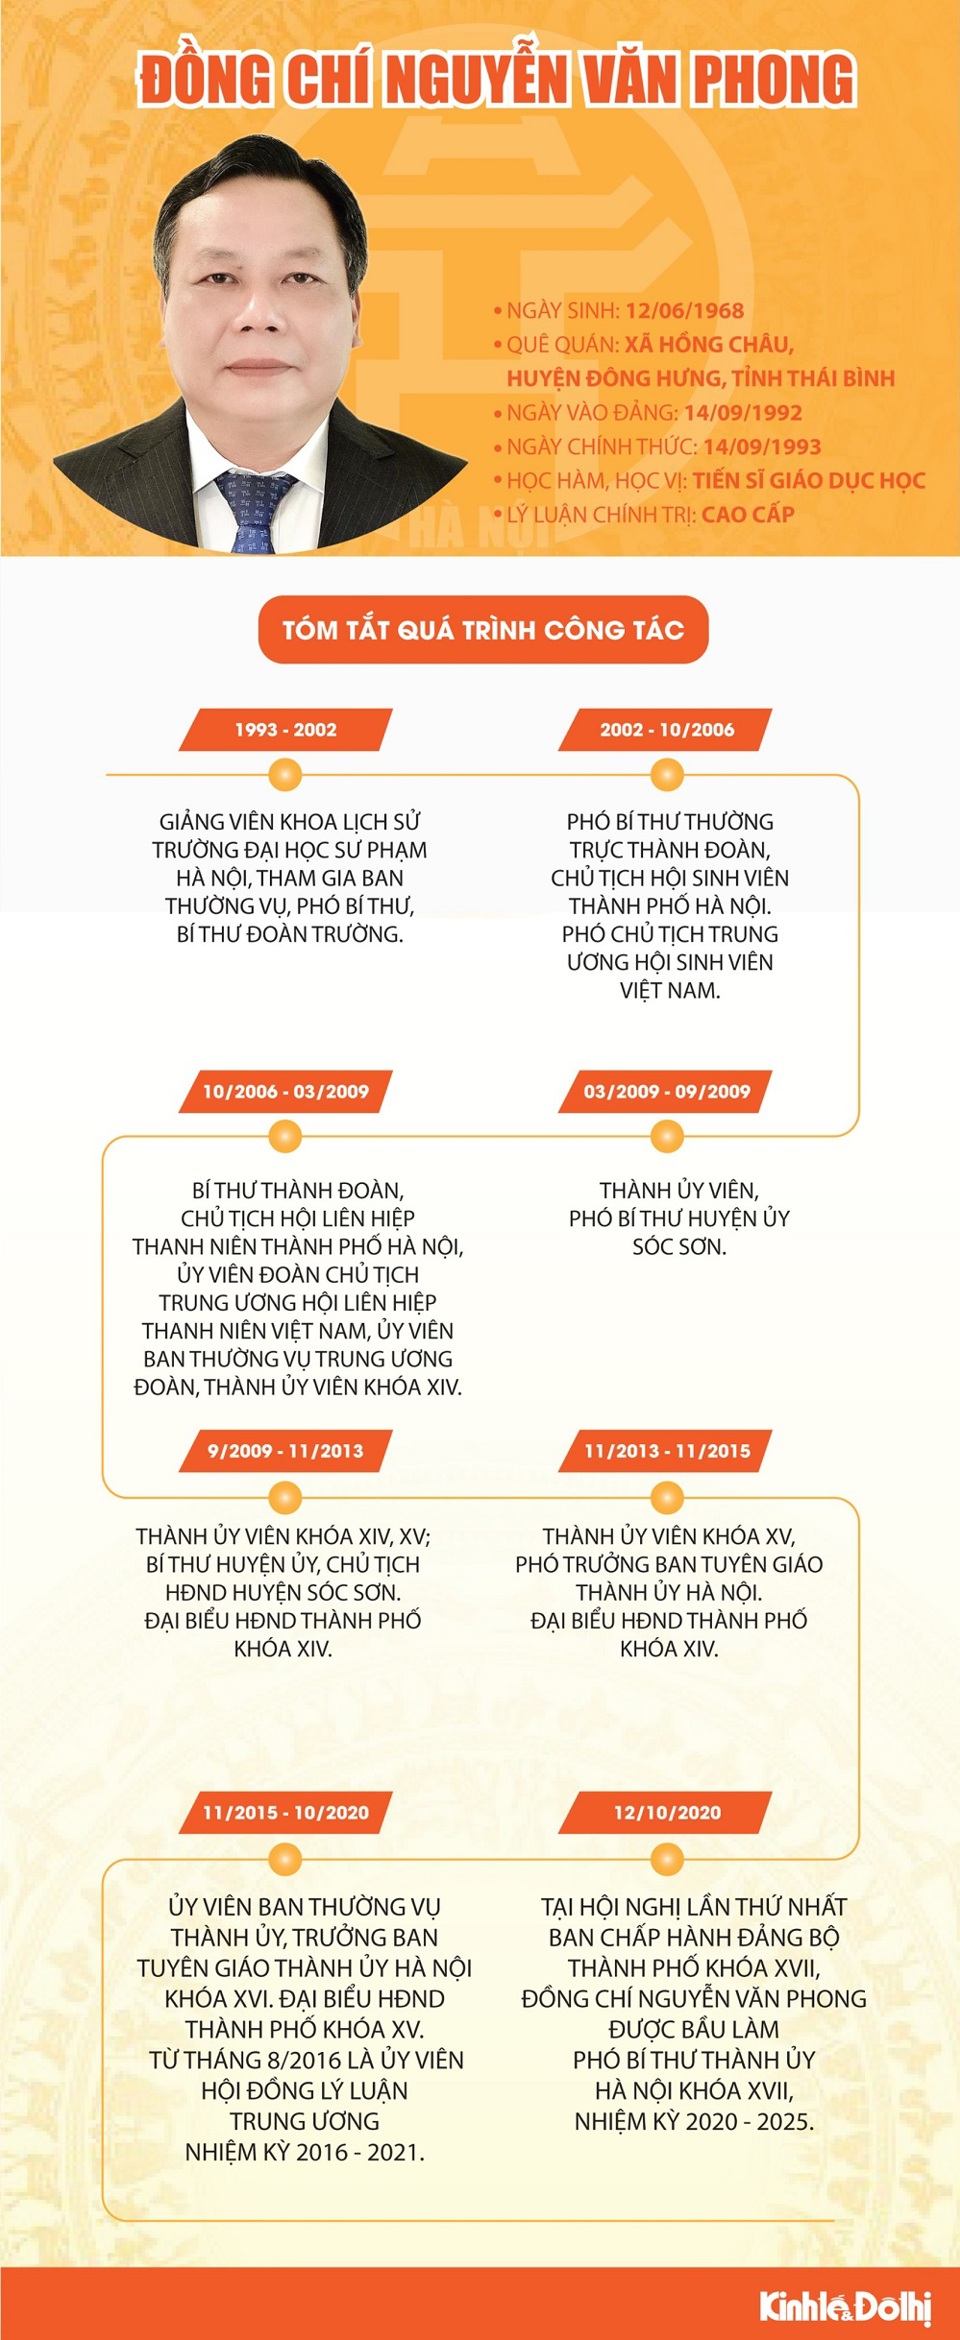 [Infographic] Tóm tắt quá trình công tác của Phó Bí thư Thành ủy Hà Nội Nguyễn Văn Phong - Ảnh 1